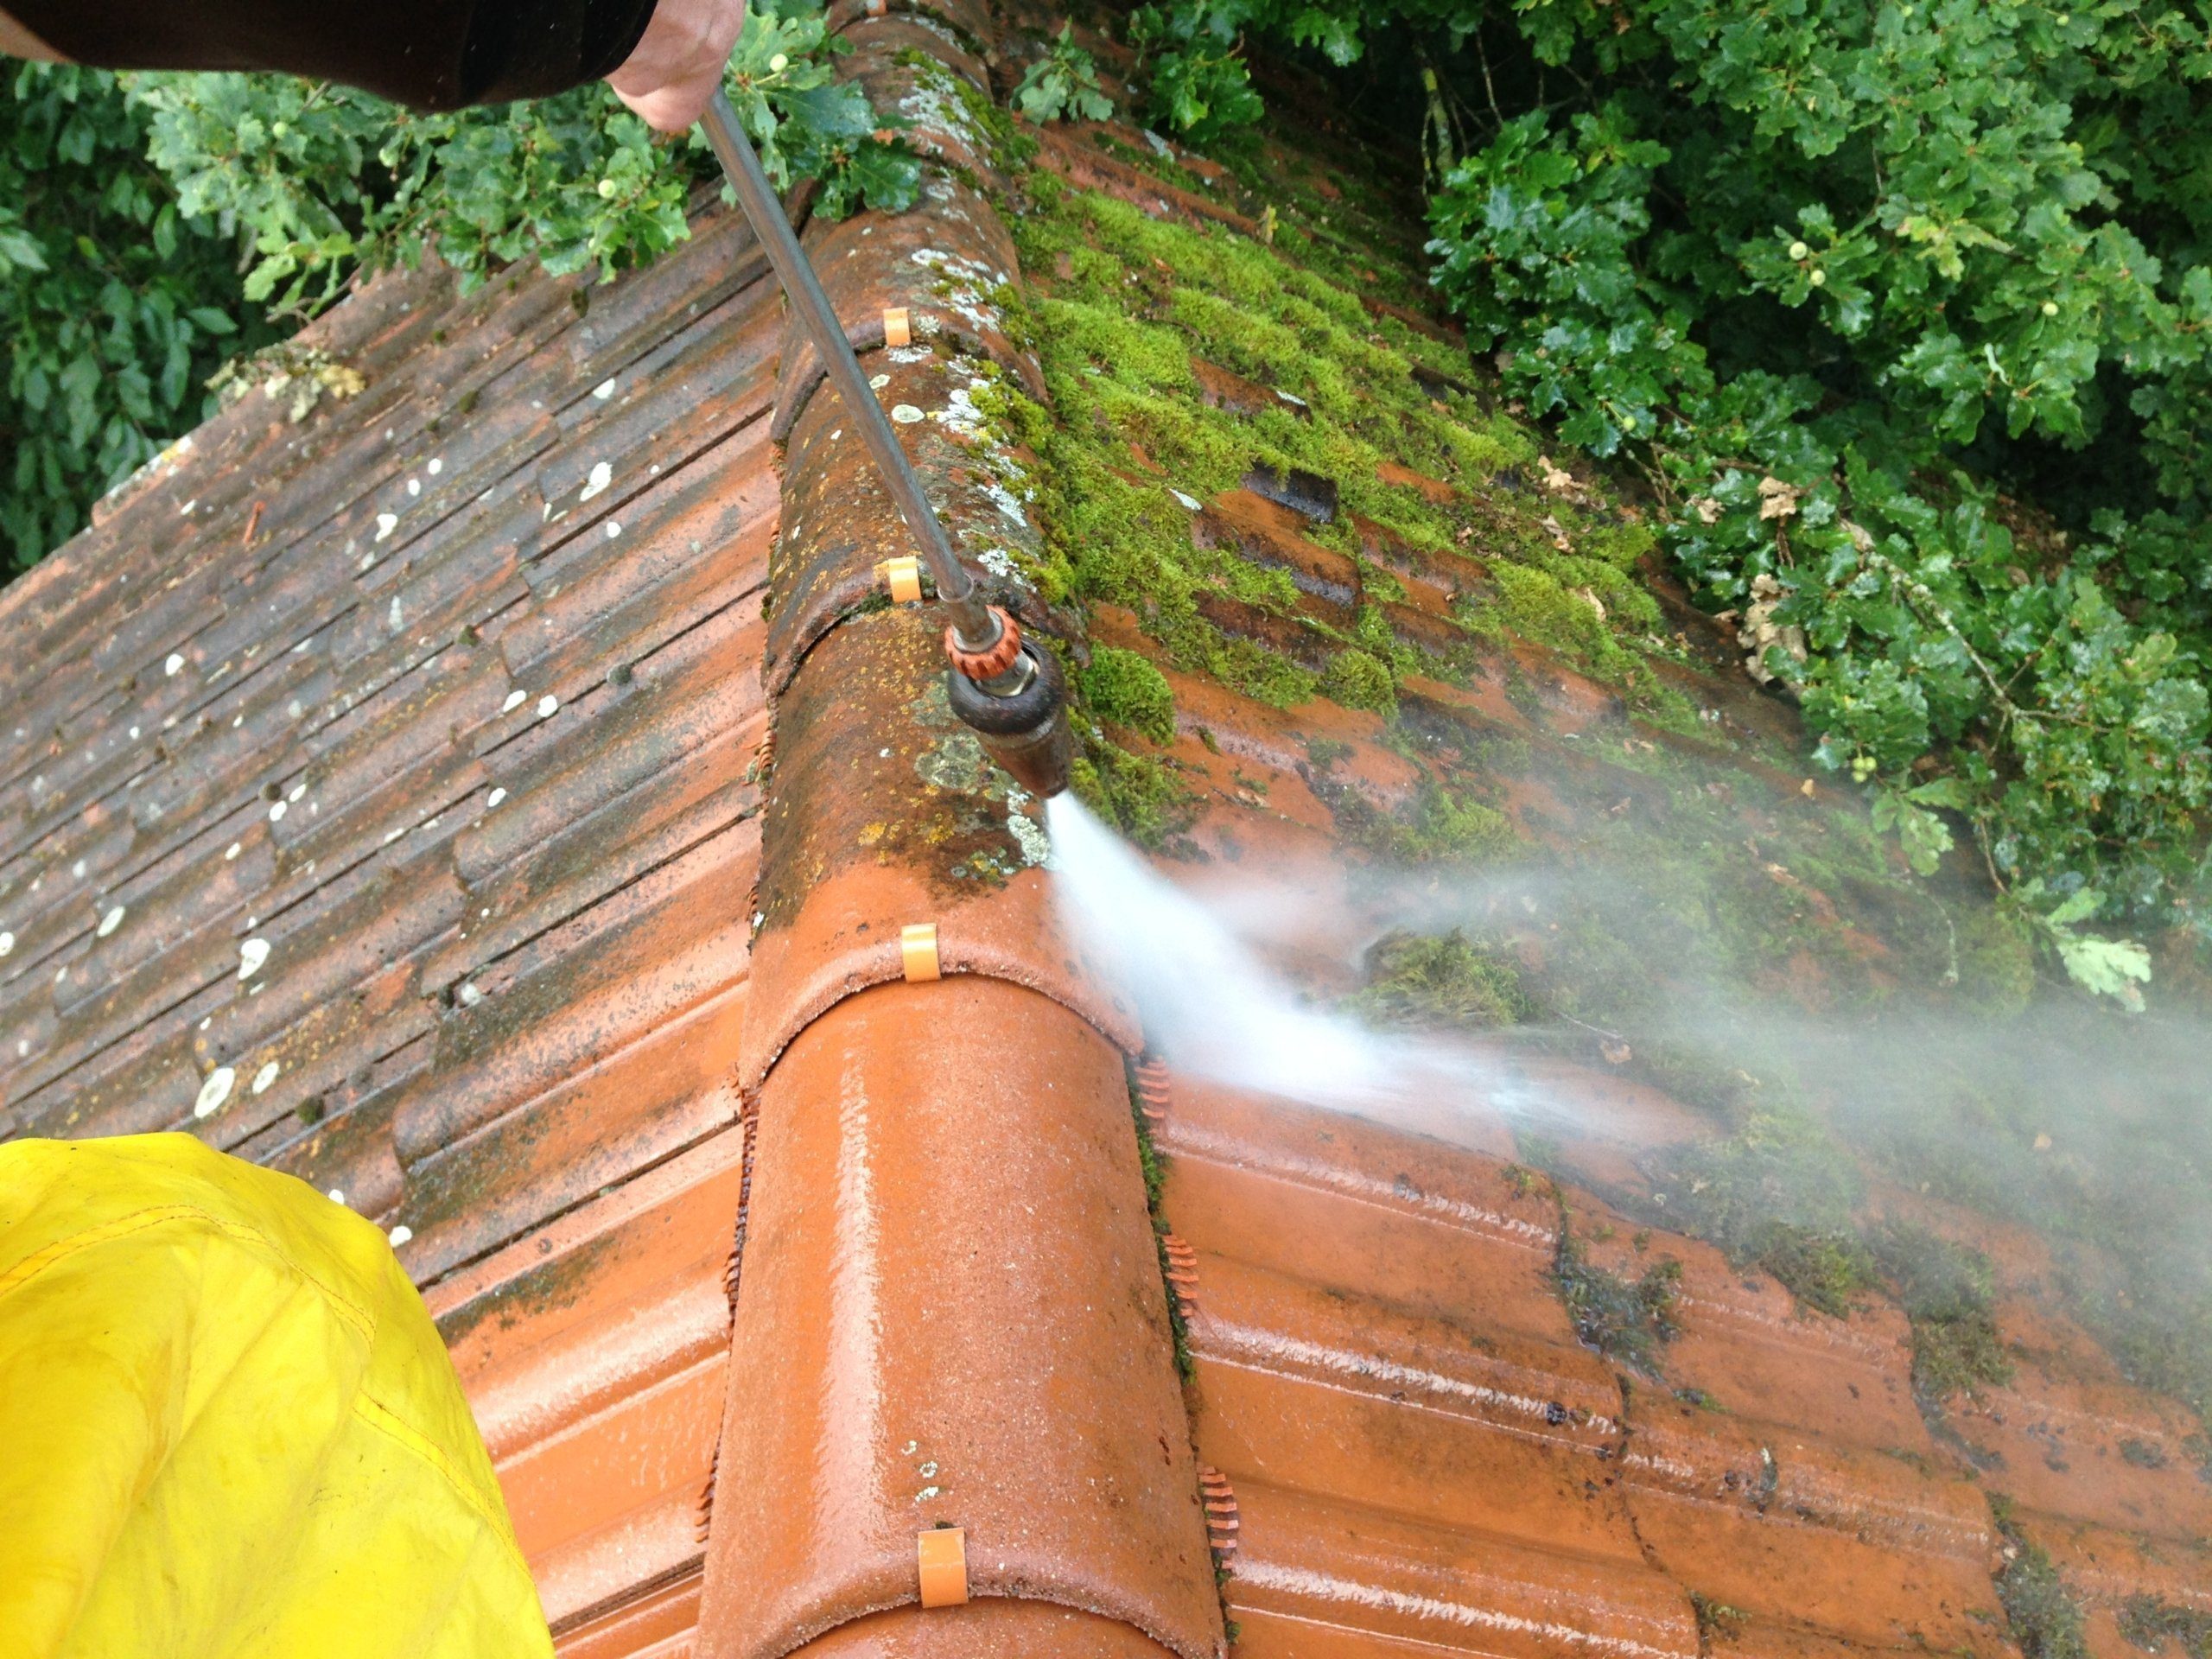 Czyszczenie dachów z powłoką dachową 4 moos vom dach entfernen scaled